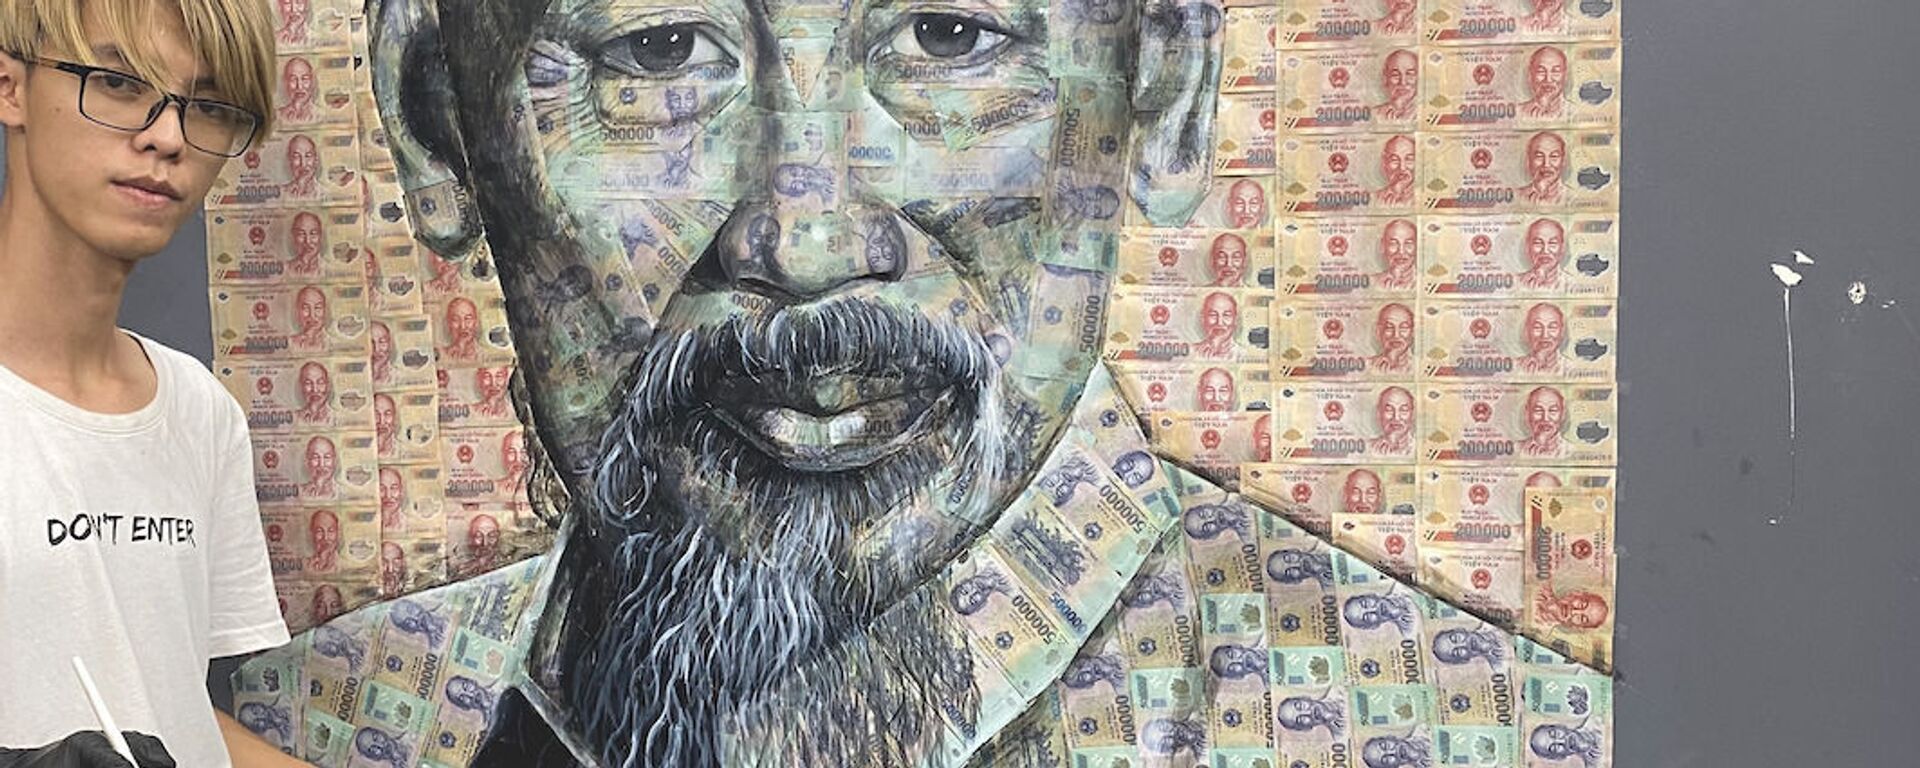 Lê Đại Phát và bức tranh Chủ tịch Hồ Chí Minh bằng tiền polymer - Sputnik Việt Nam, 1920, 12.05.2021